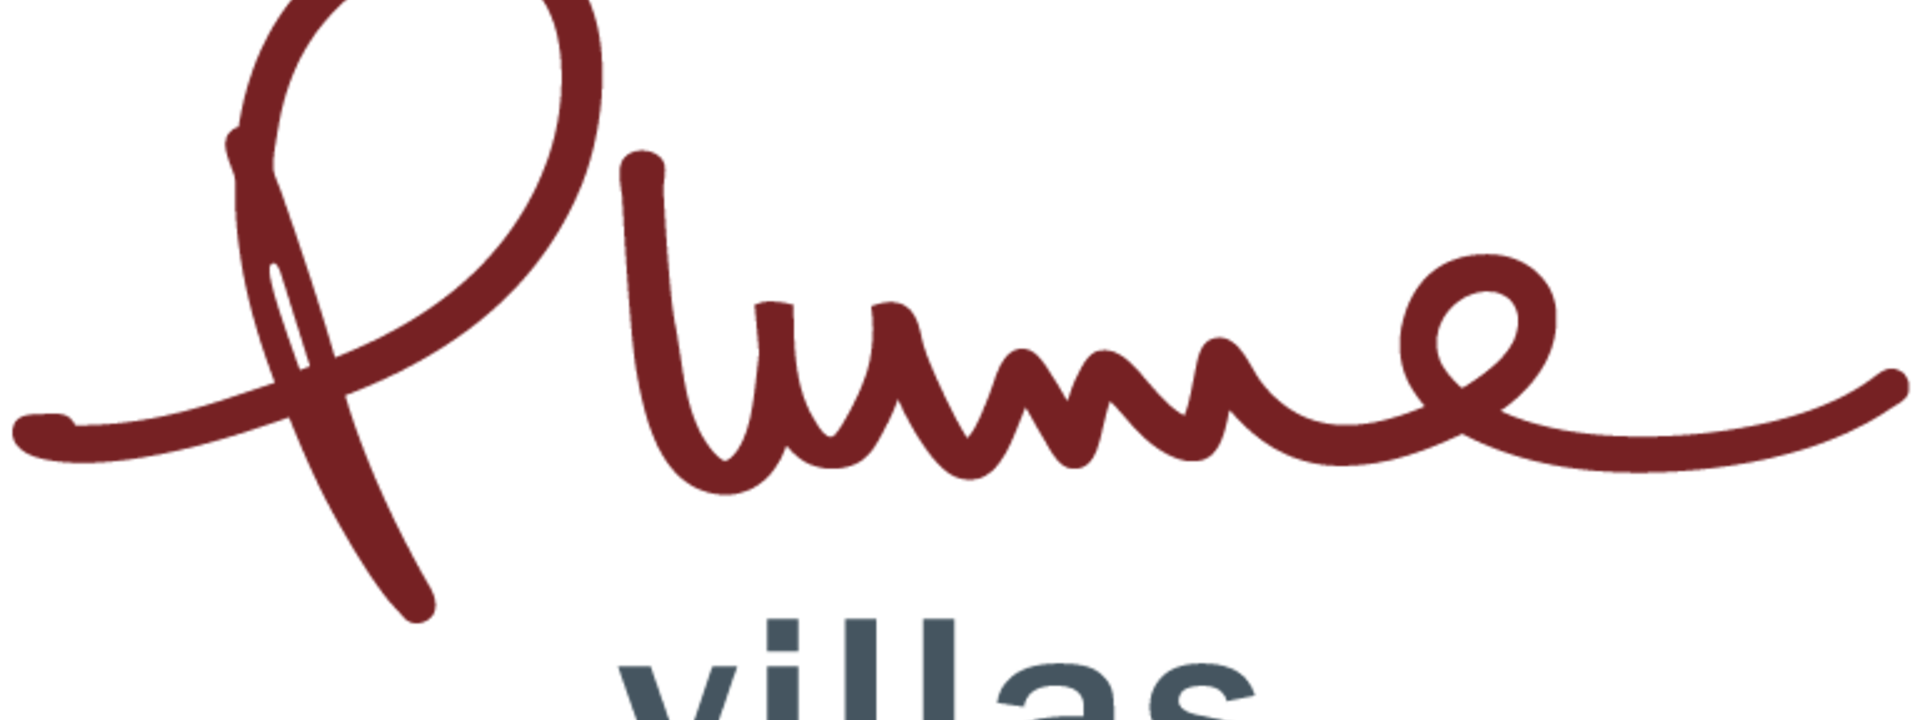 plume-villas-logo.png